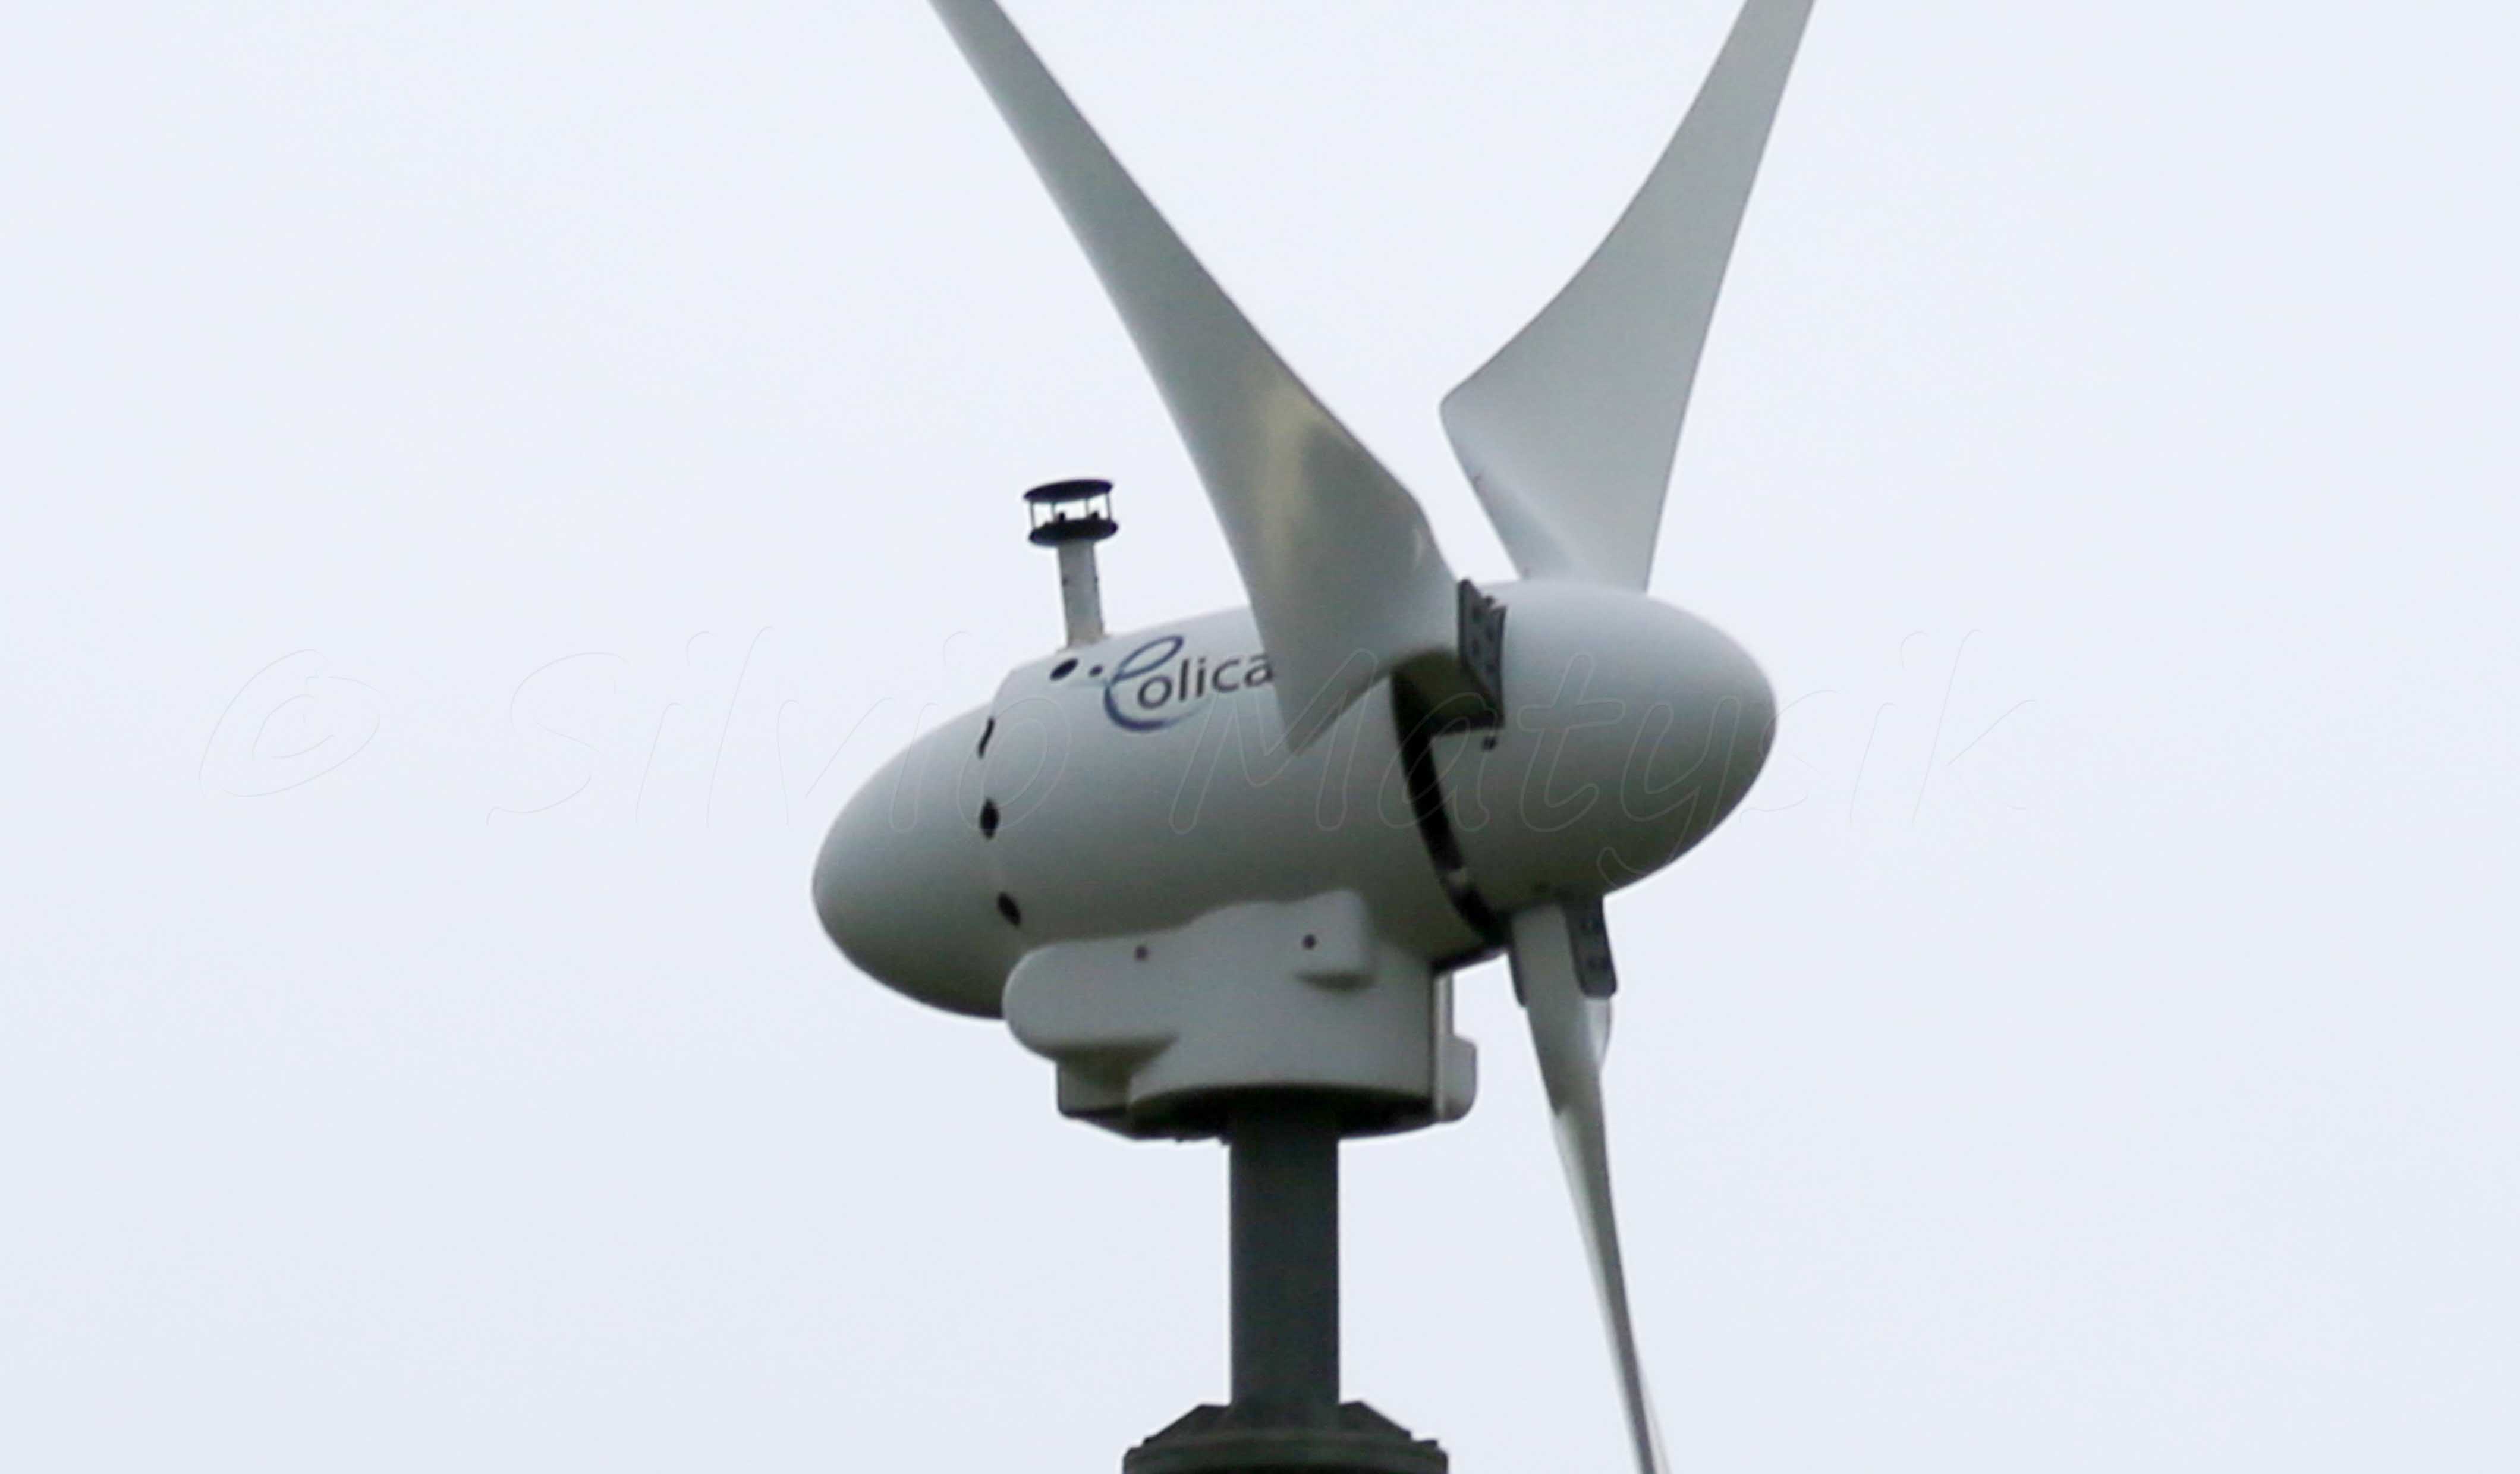 Eolica 2kW - 2,00 kW - Windkraftanlage